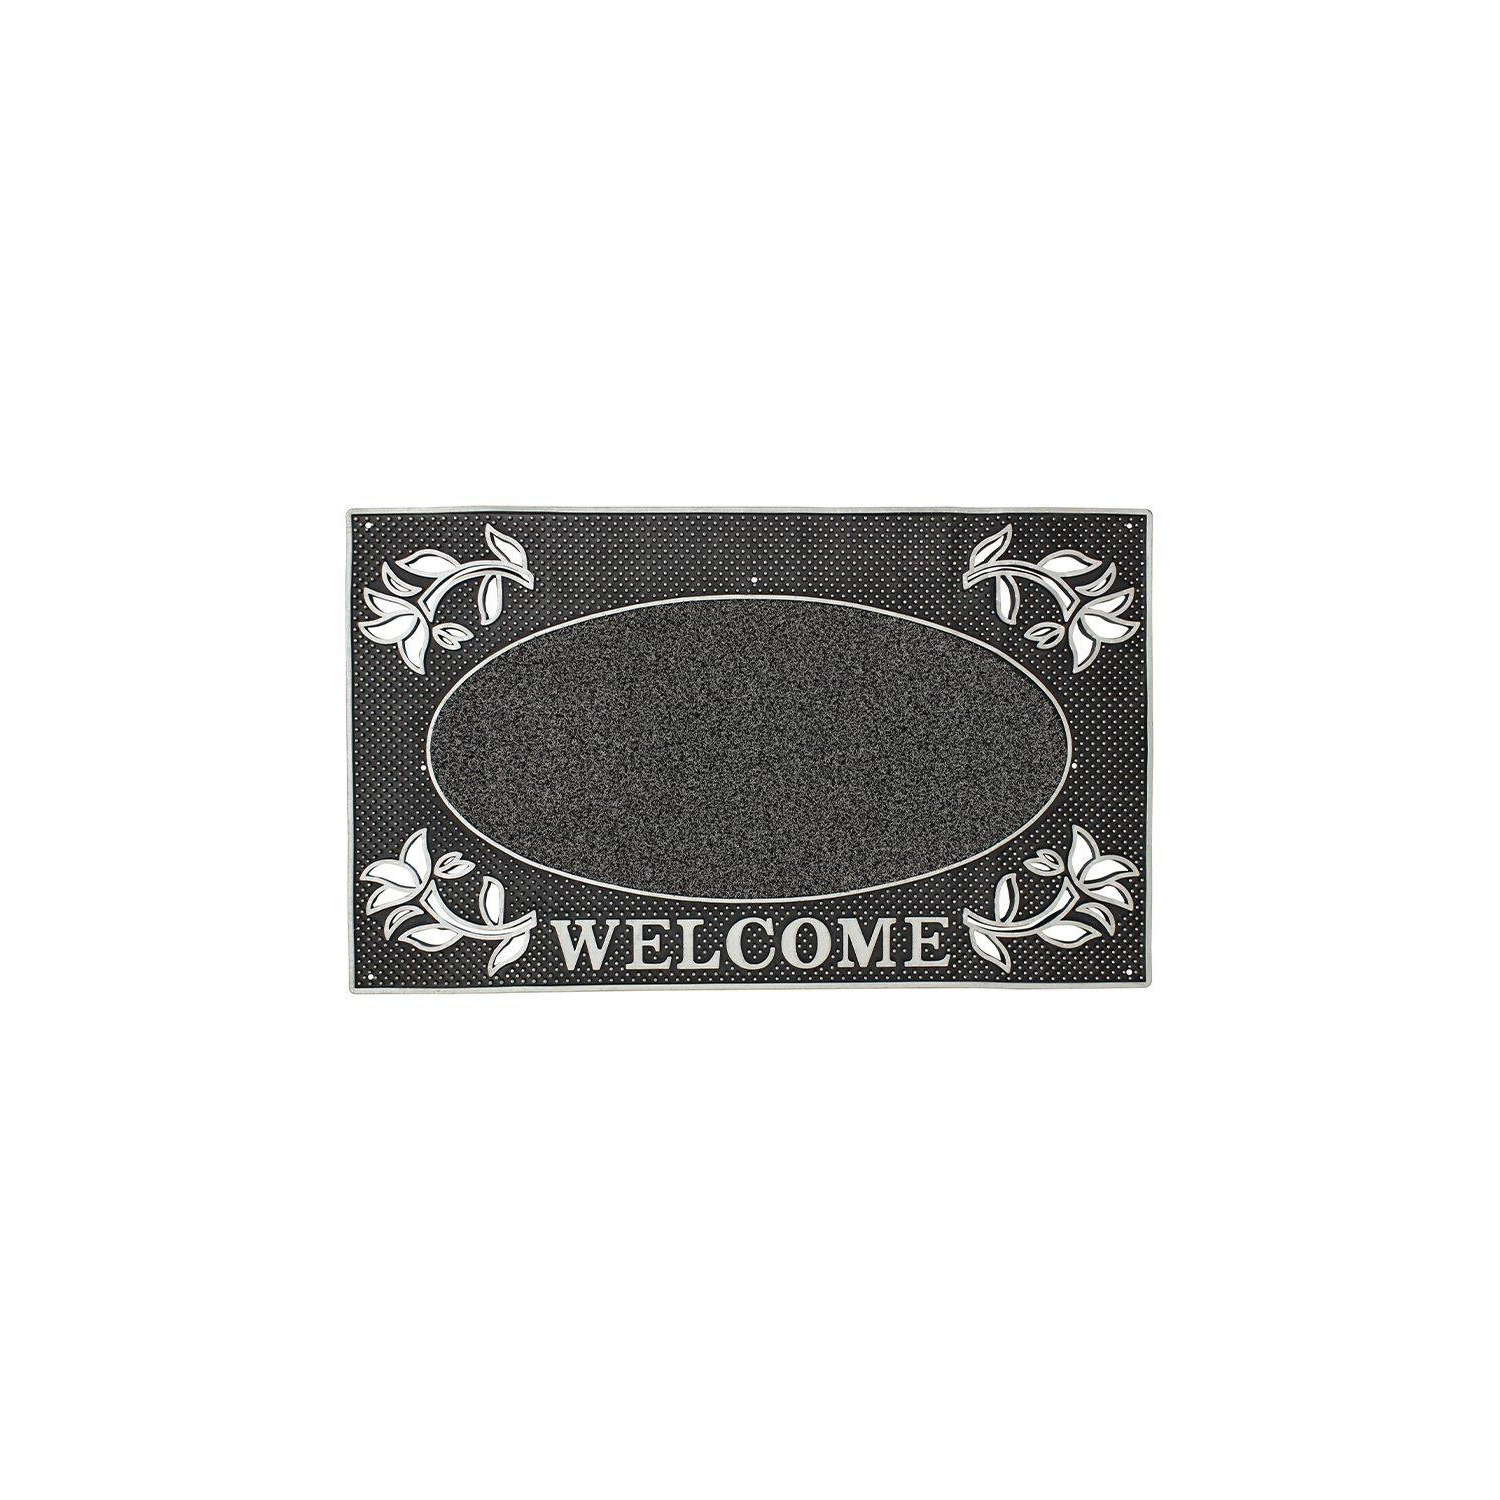 Metallic Look Welcome Floral PVC Scraper Doormat 45x75cm Silver - image 1